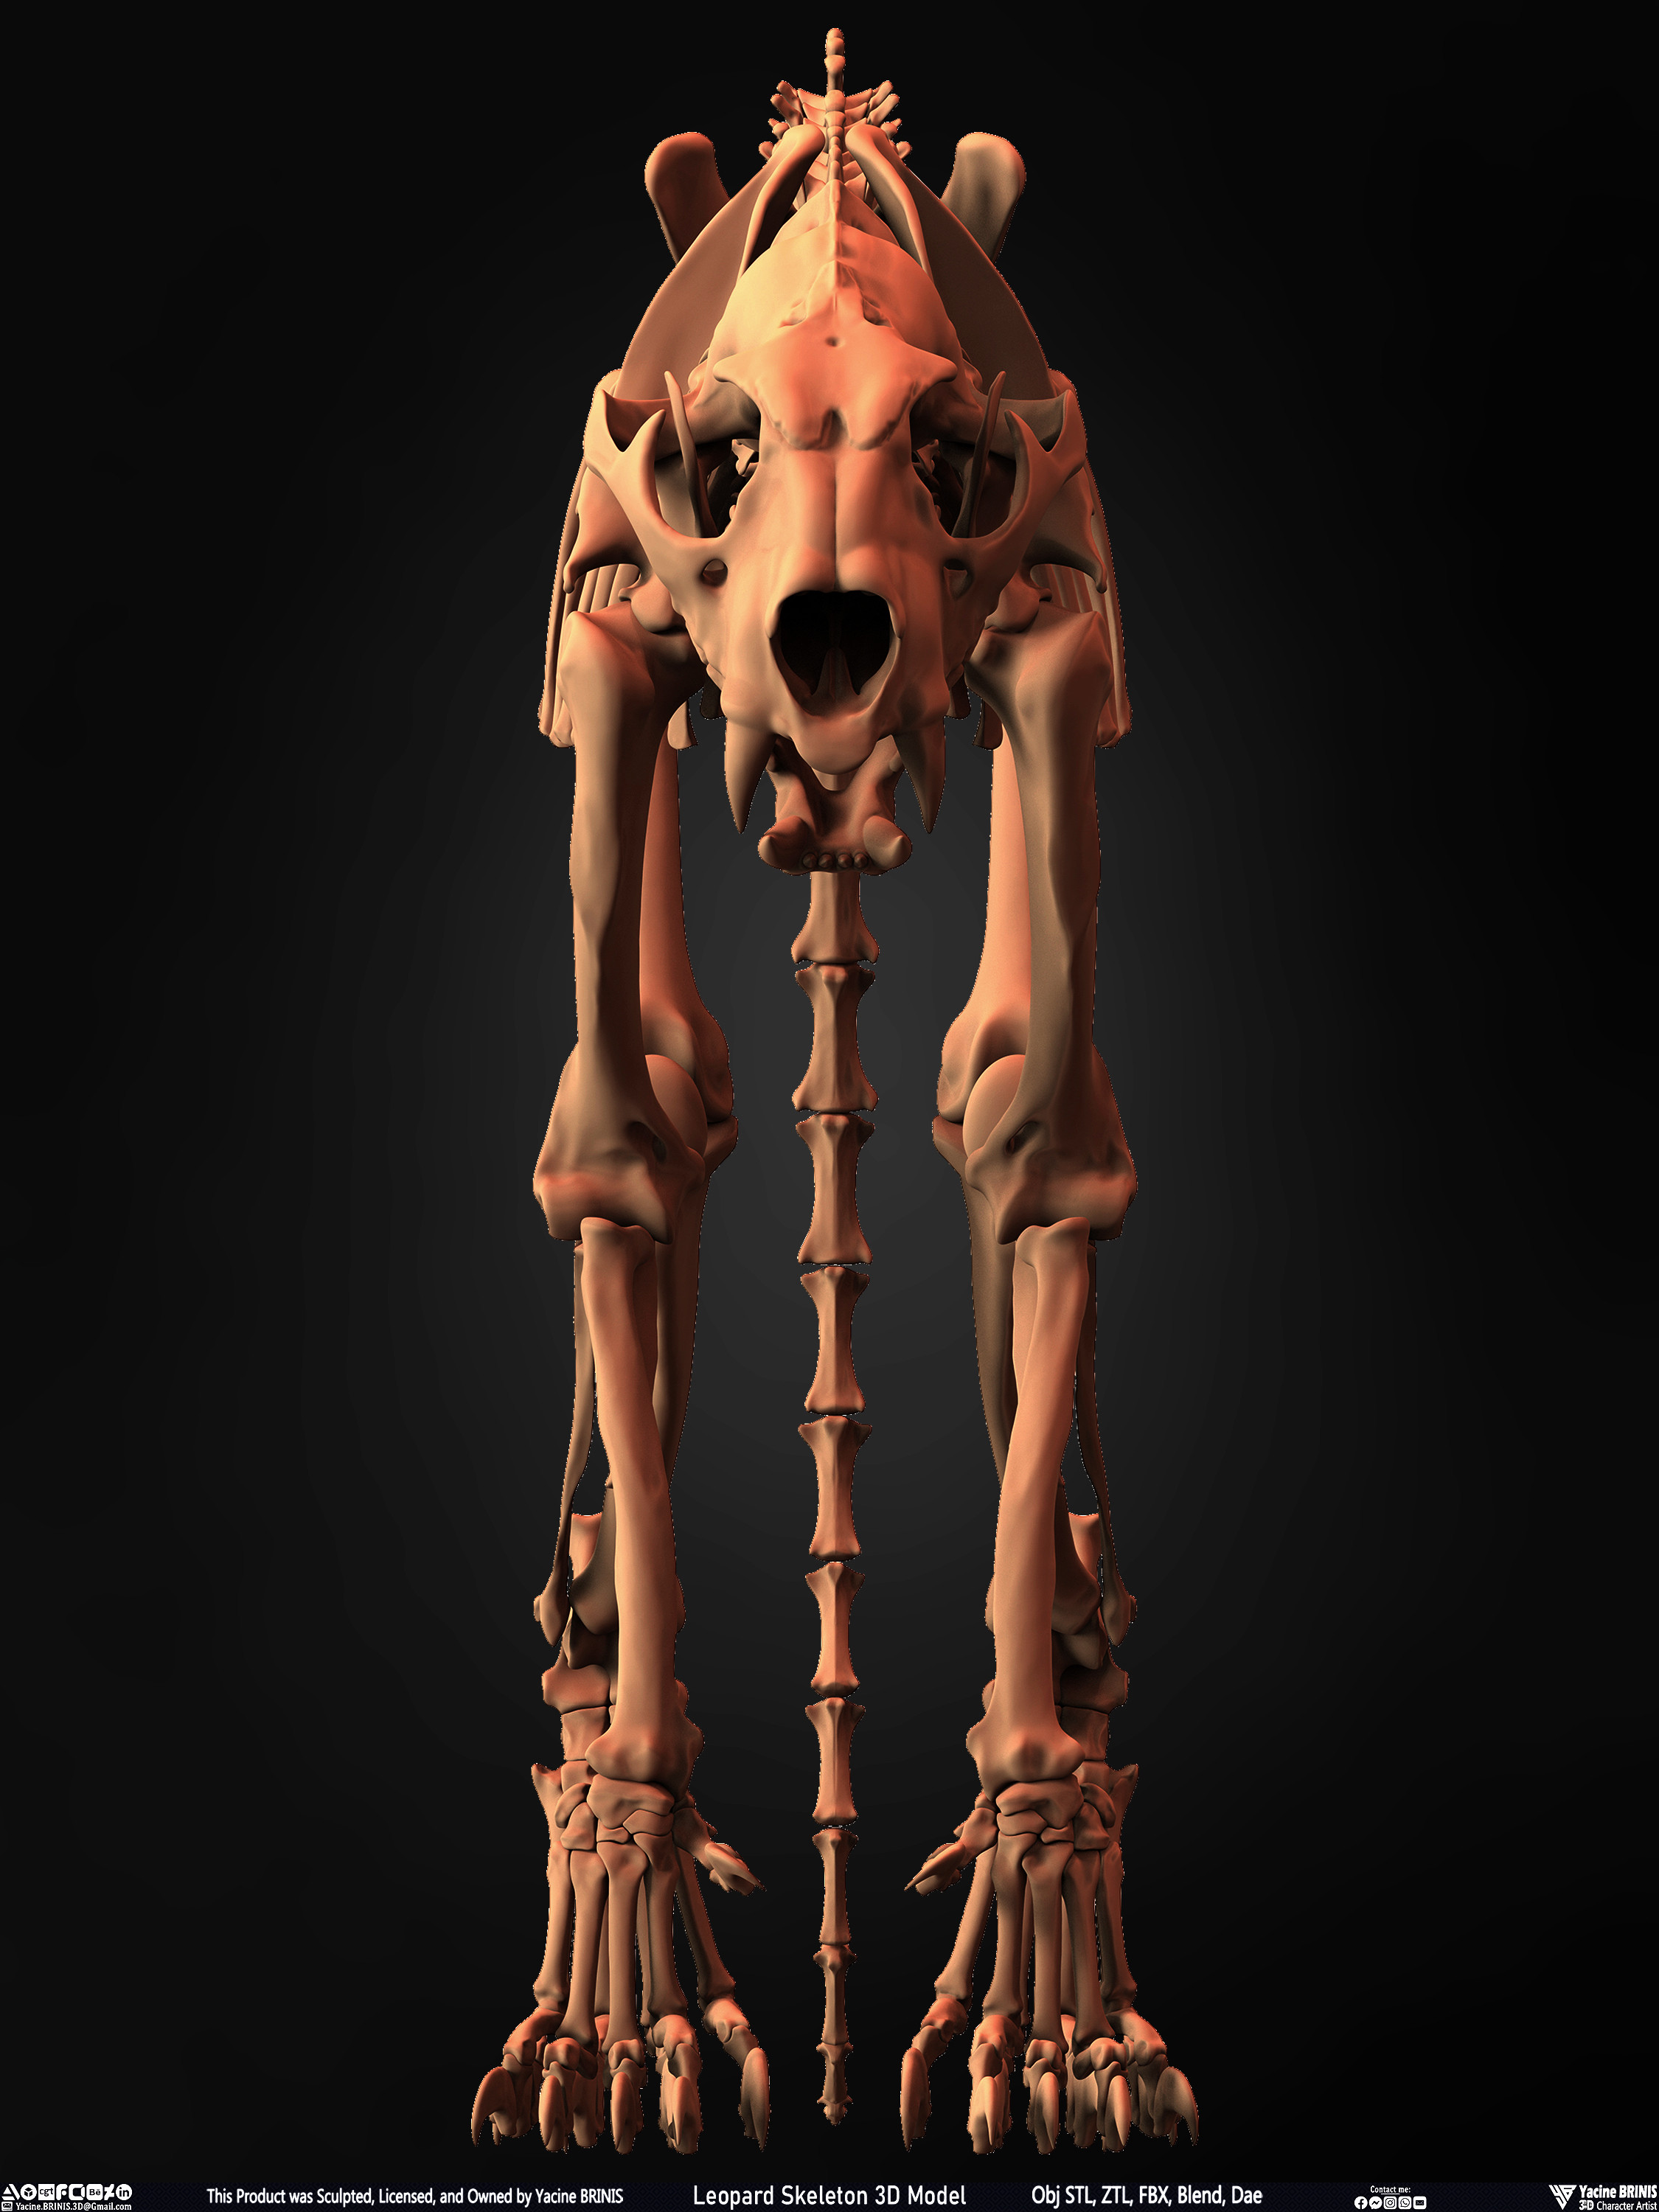 Leopard Skeleton 3D Model Sculpted By Yacine BRINIS 004